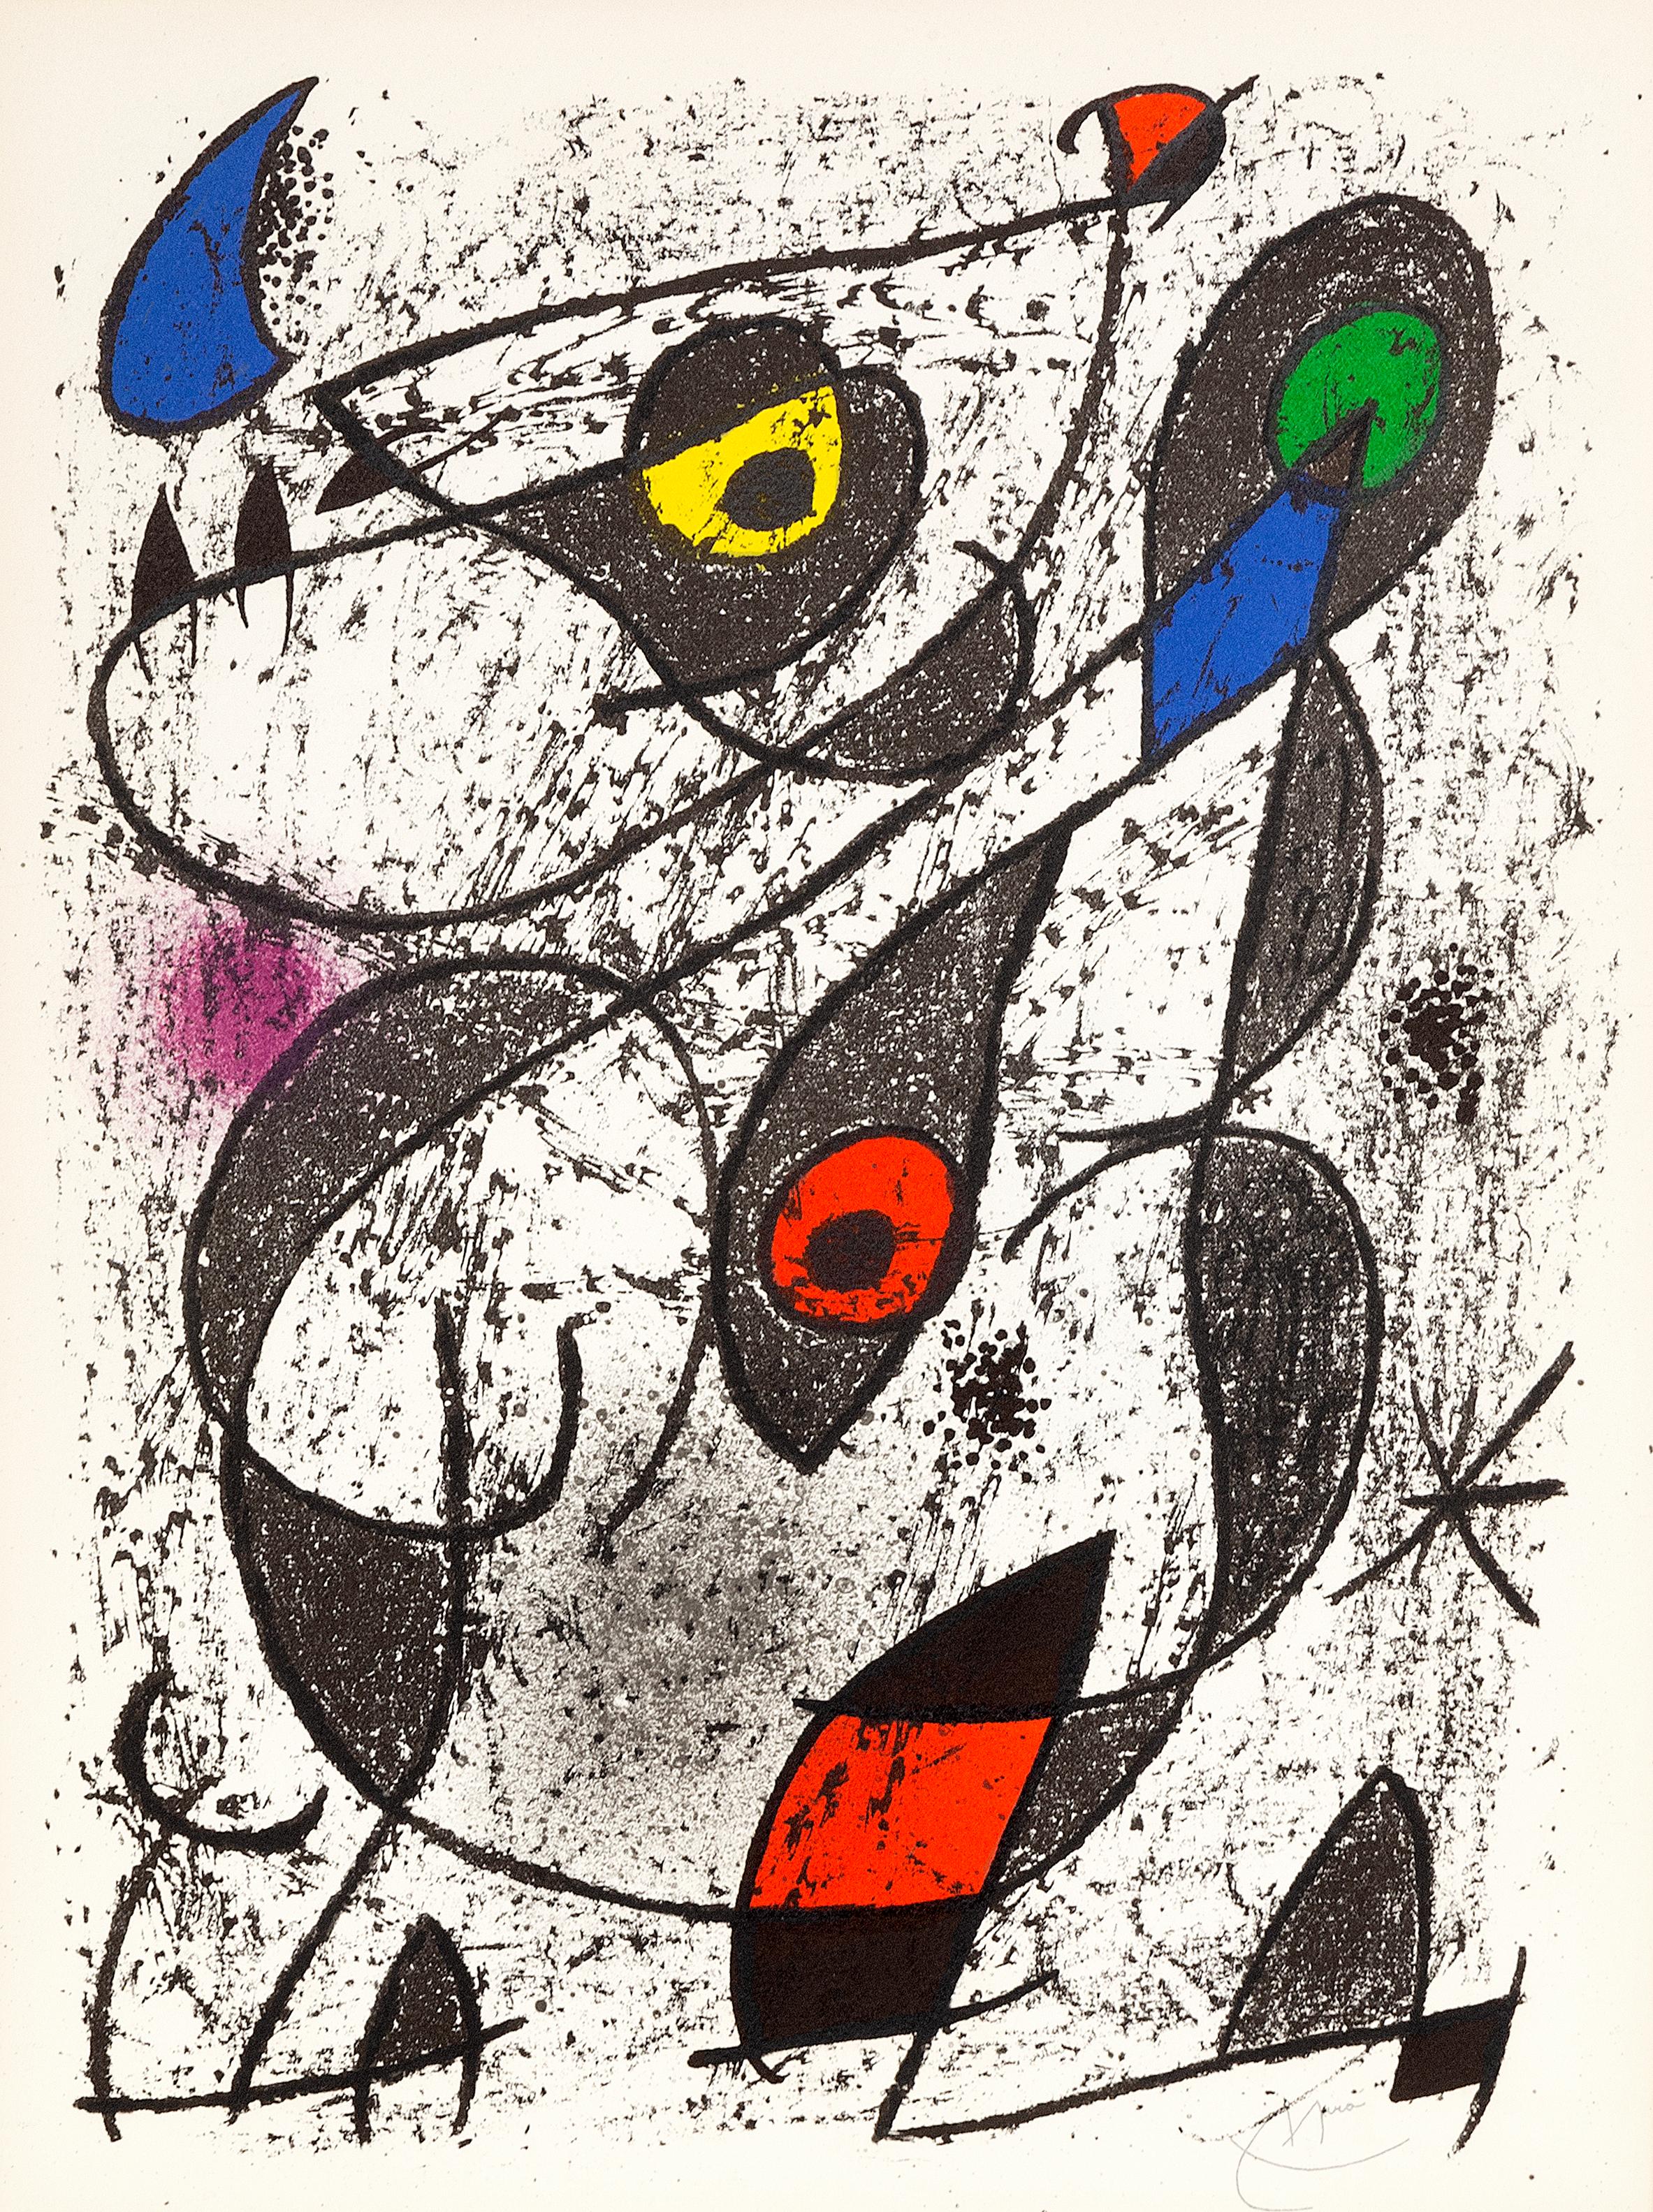 Miro à l'Encre II, lithographie sur papier vélin du Miro indélébile - Print de Joan Miró